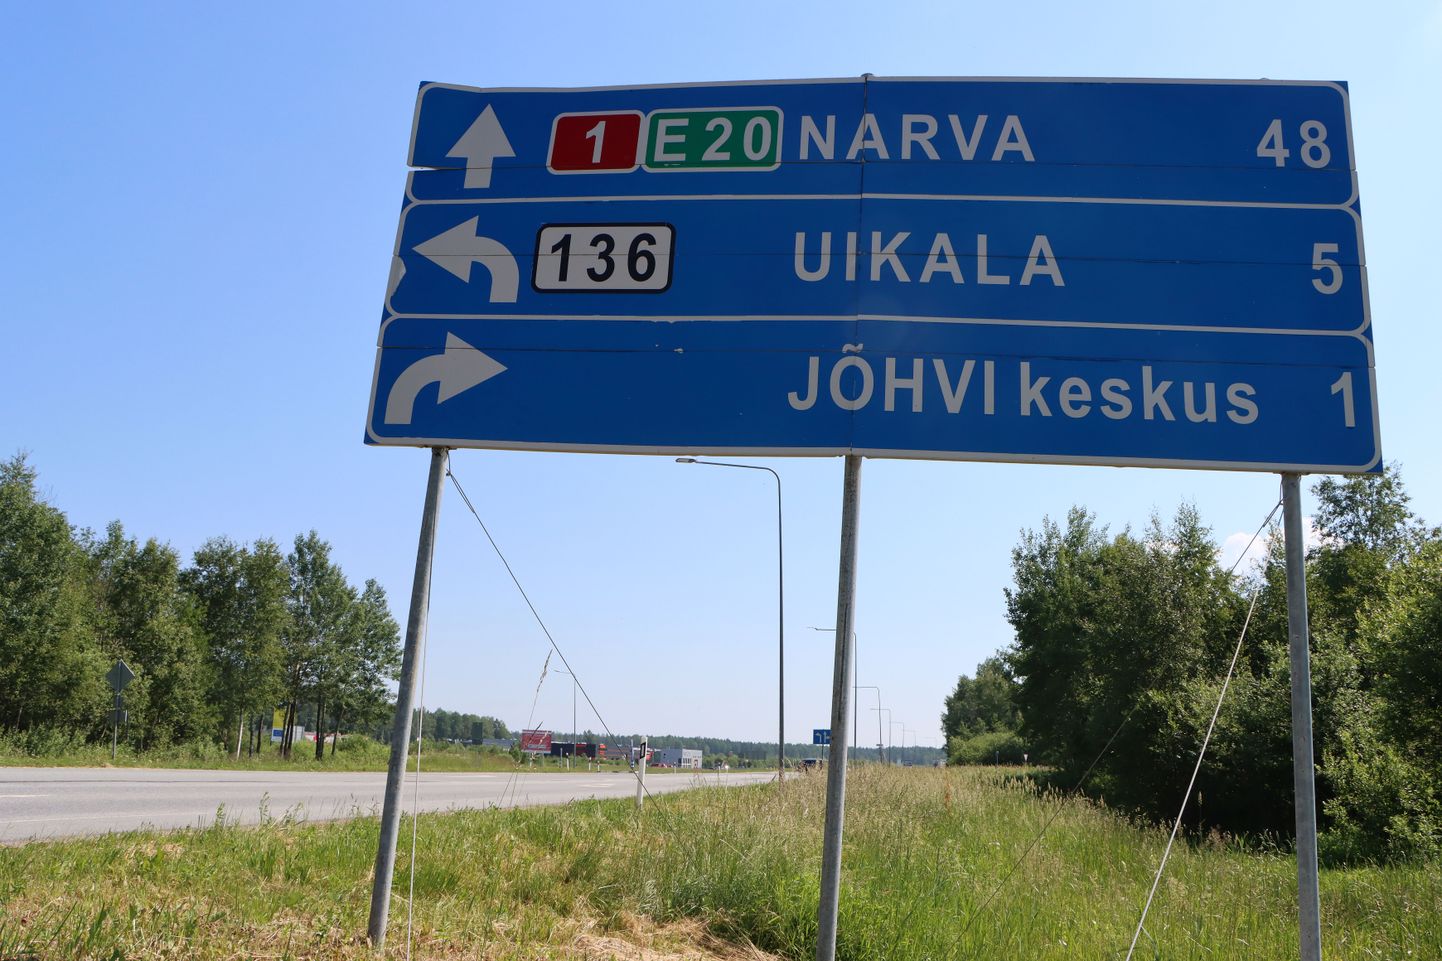 Viimaste riigikogu valimiste eel lubasid kõik suuremad erakonnad ehitada Narva suunduva maantee neljarealiseks. Valijad ootavad, et nad ei saadaks seda lubadust Uikala prügilasse, vaid täidaks selle.